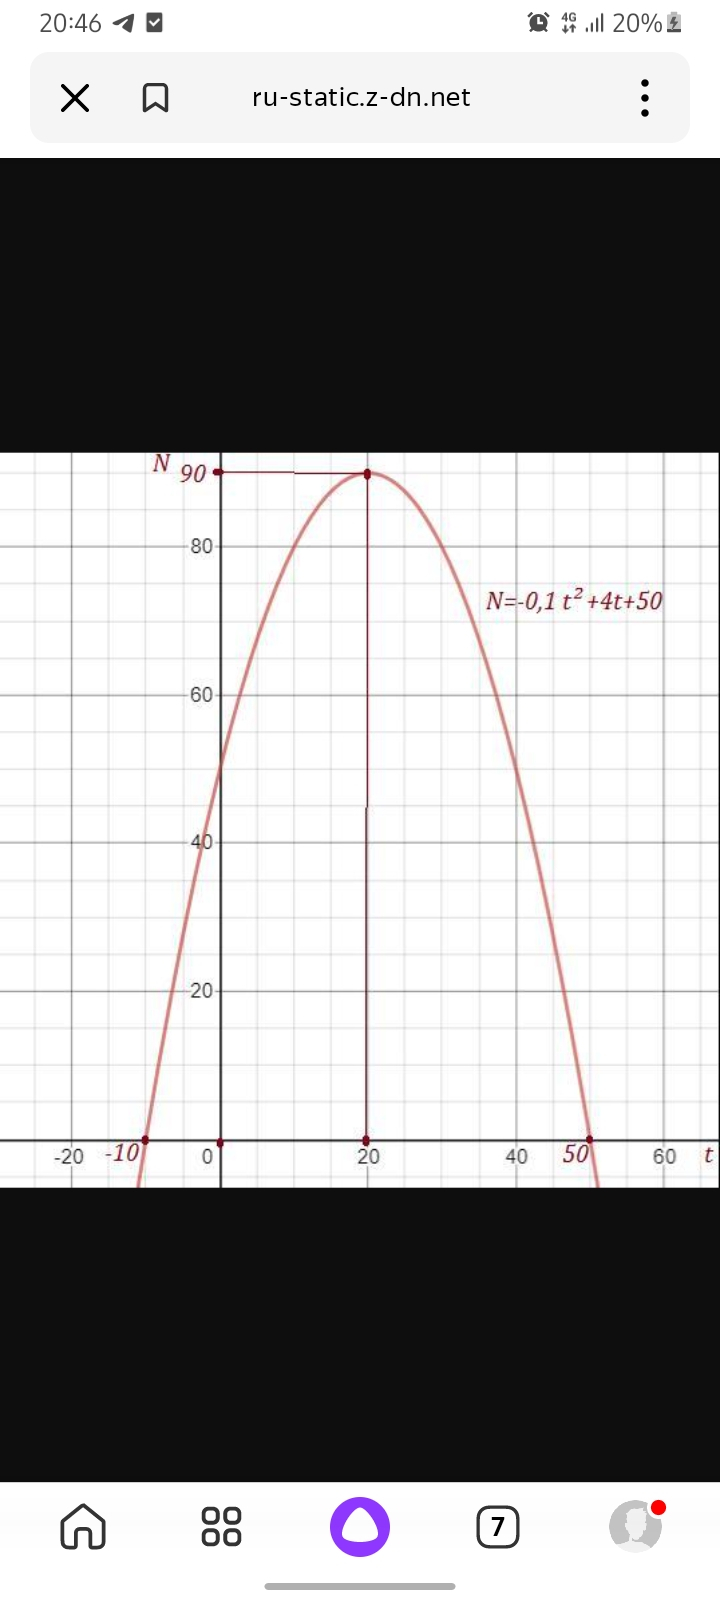 Графиком заданной функции является парабола .

  

Максимальным число оленей будет через 20 лет. Их 